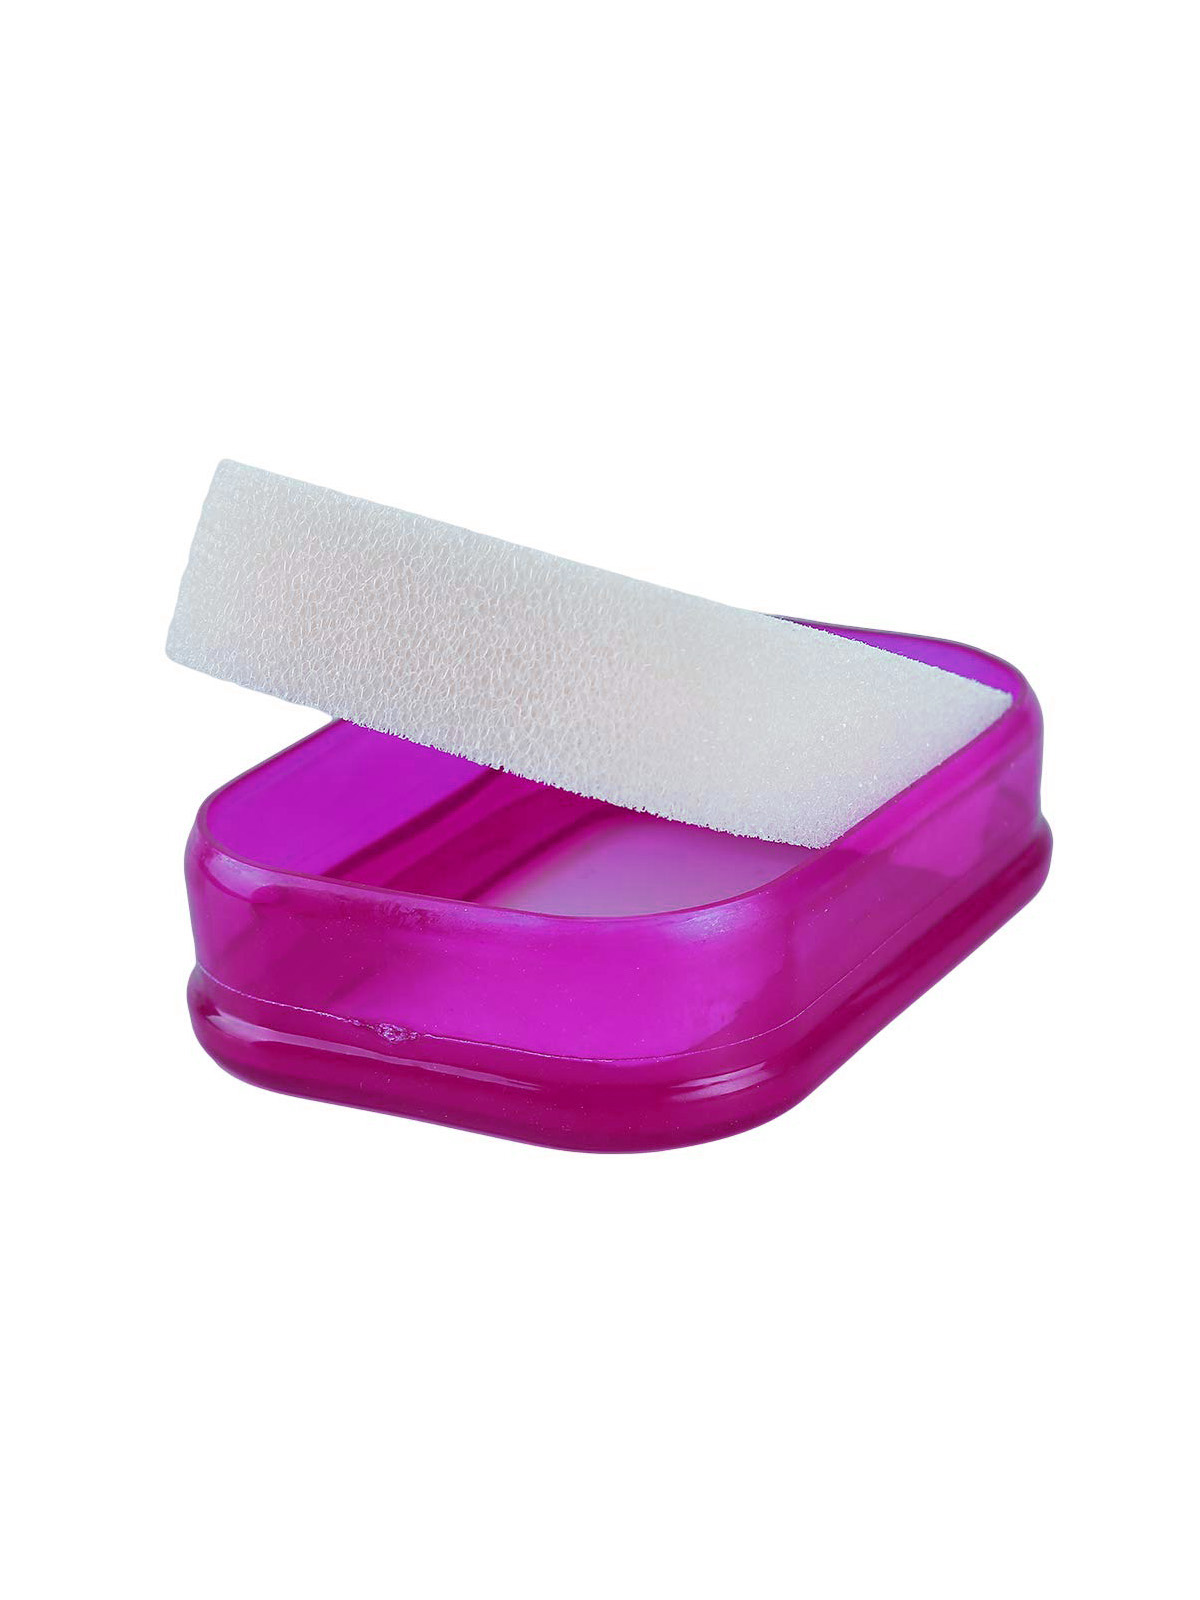 фото Мыльница Blonder Home Мультифункциональная губка мыльница в пластиковой коробке, мыльница с губкой поролоновой (фиол.), BH-ASH-05, ПВХ (поливинилхлорид), Пластик